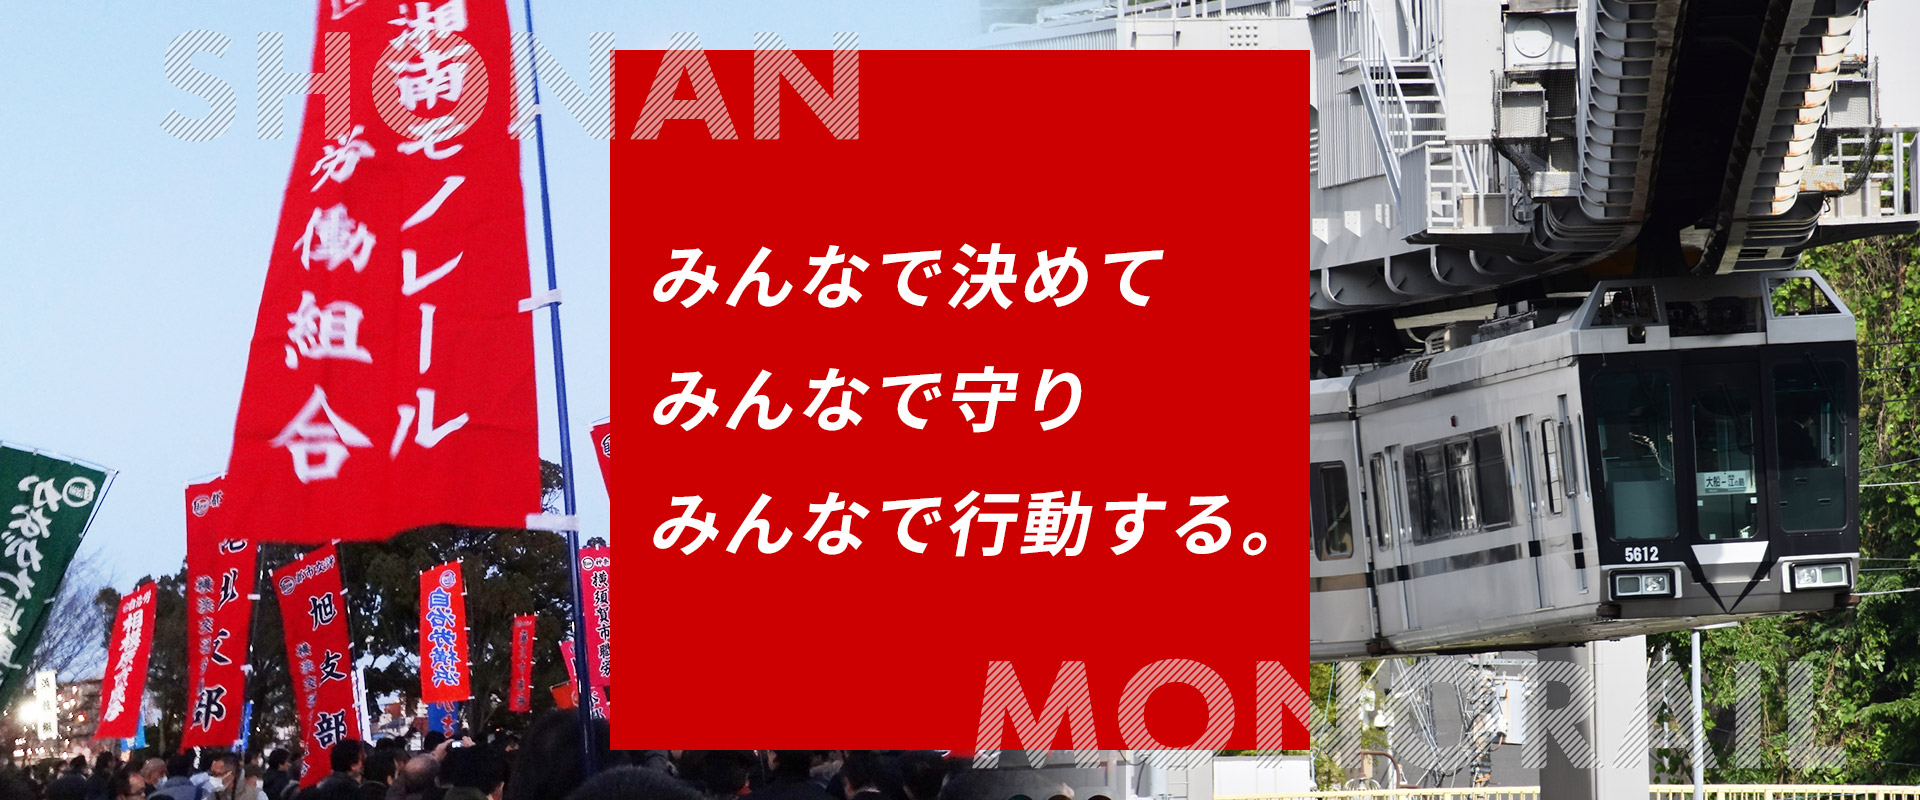 私鉄総連 湘南モノレール労働組合